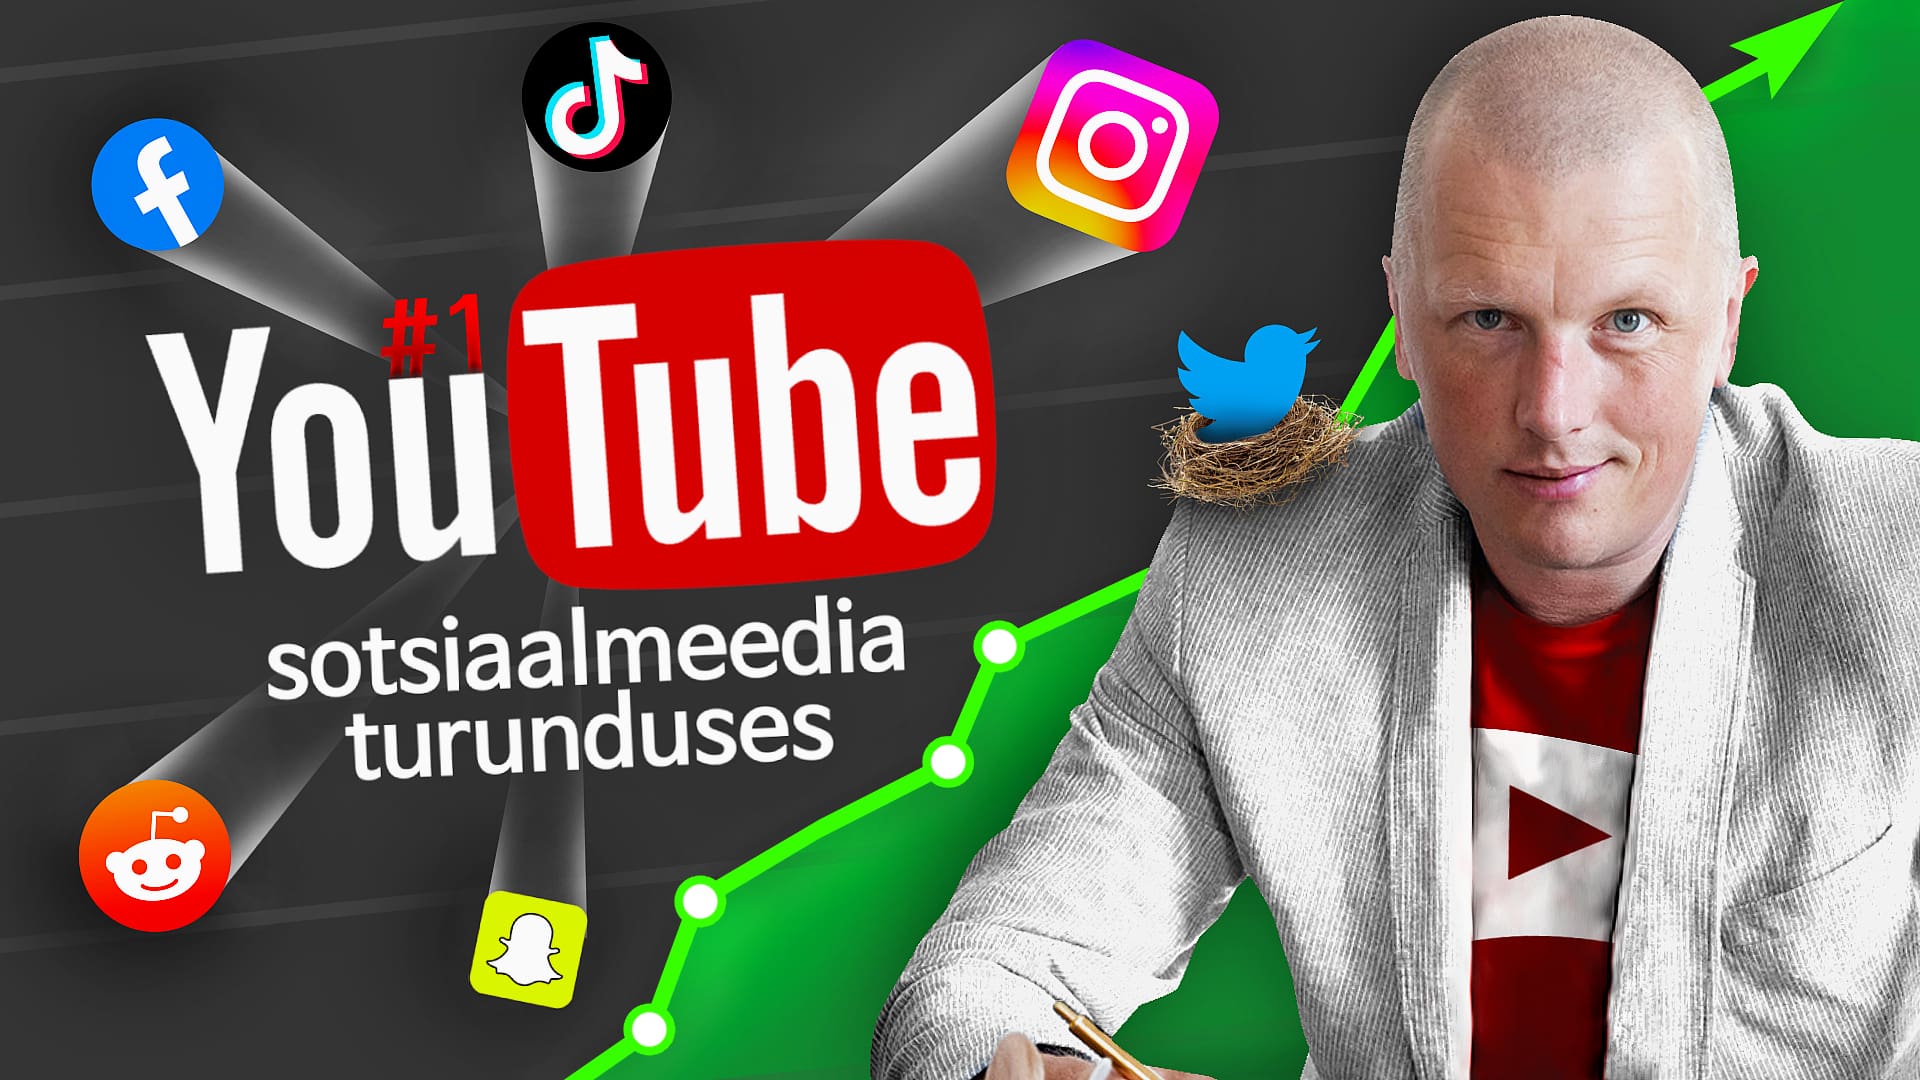 VideoTurundus - YouTube sotsiaalmeedia turunduses